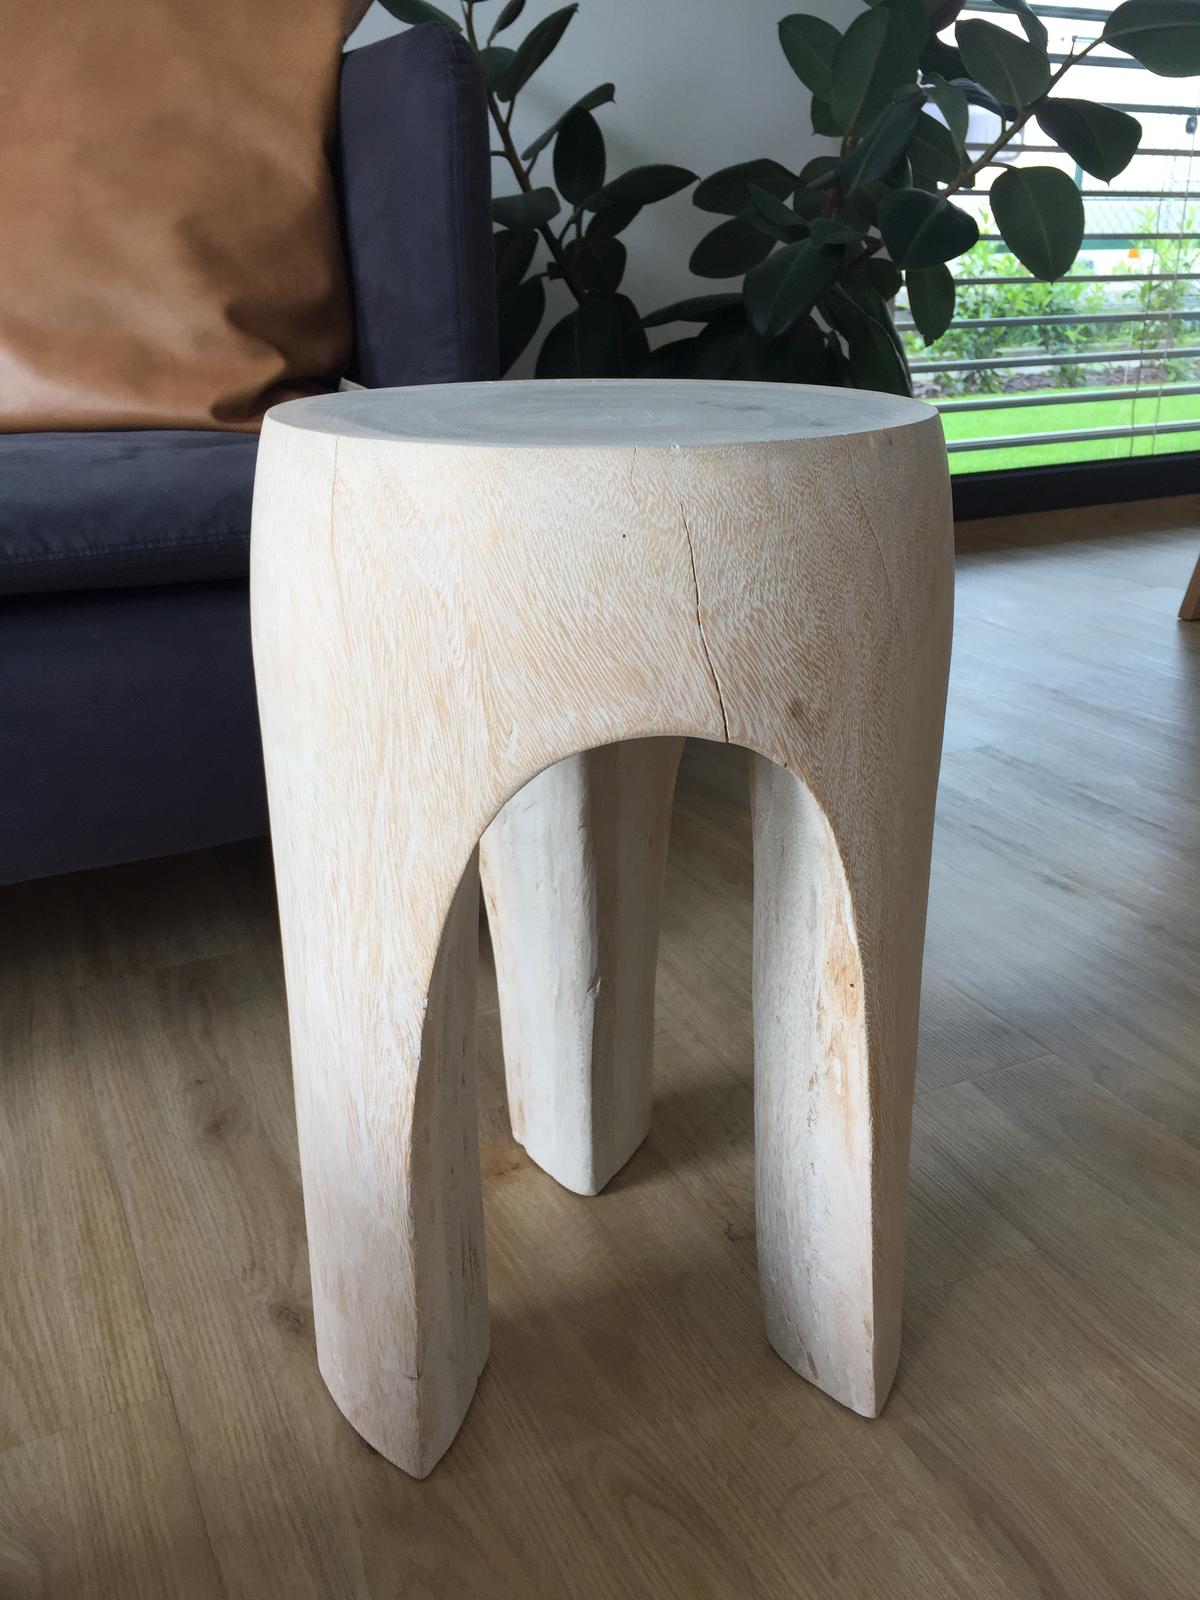 Designova drevena stolicka - Obrázek č. 4